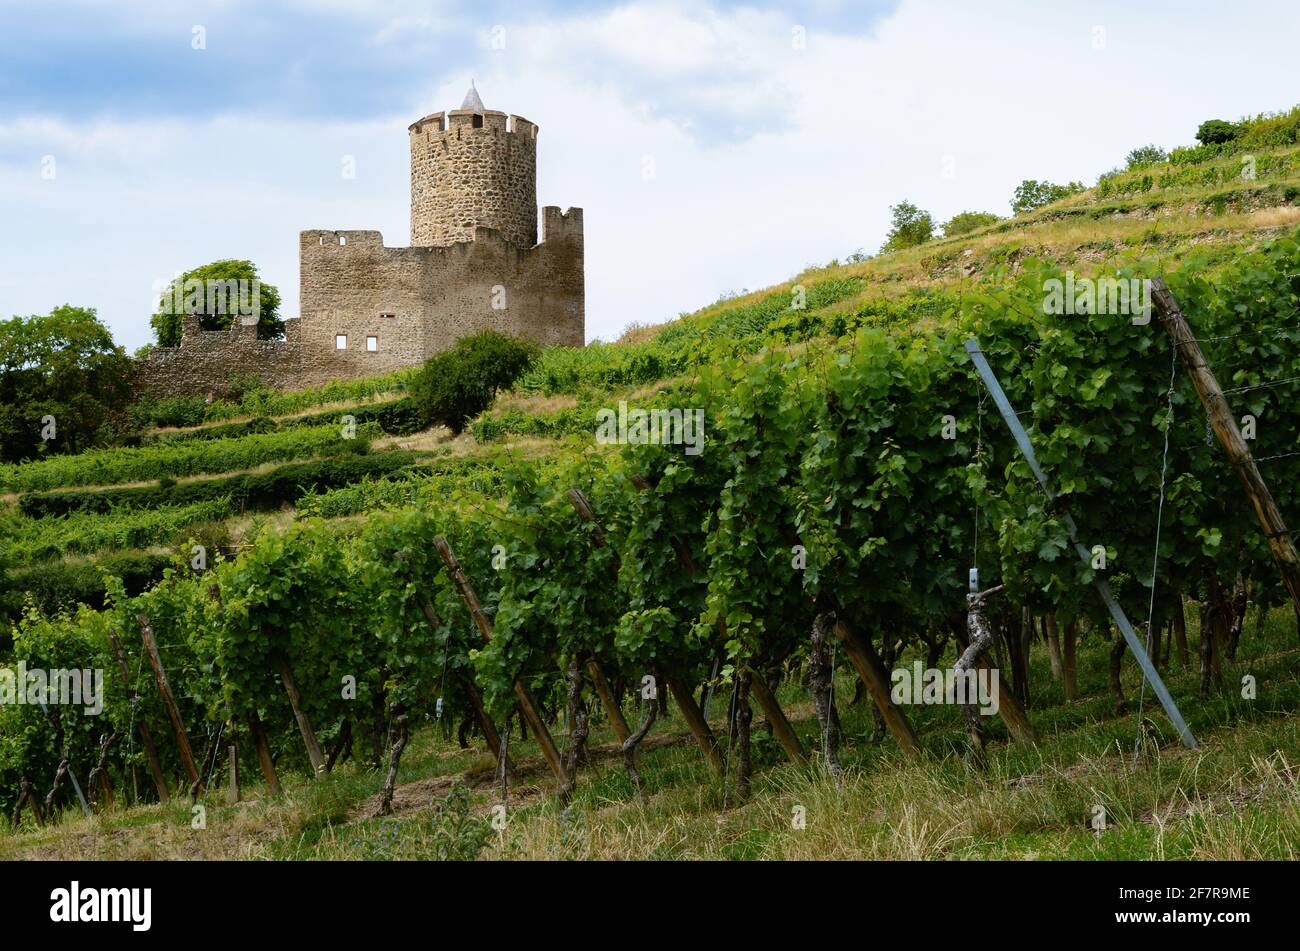 Vista estiva delle rovine del castello medievale tra i vigneti del vigneto di Keysersberg, famoso villaggio vinicolo in Alsazia, vicino a Colmar (Francia) Foto Stock